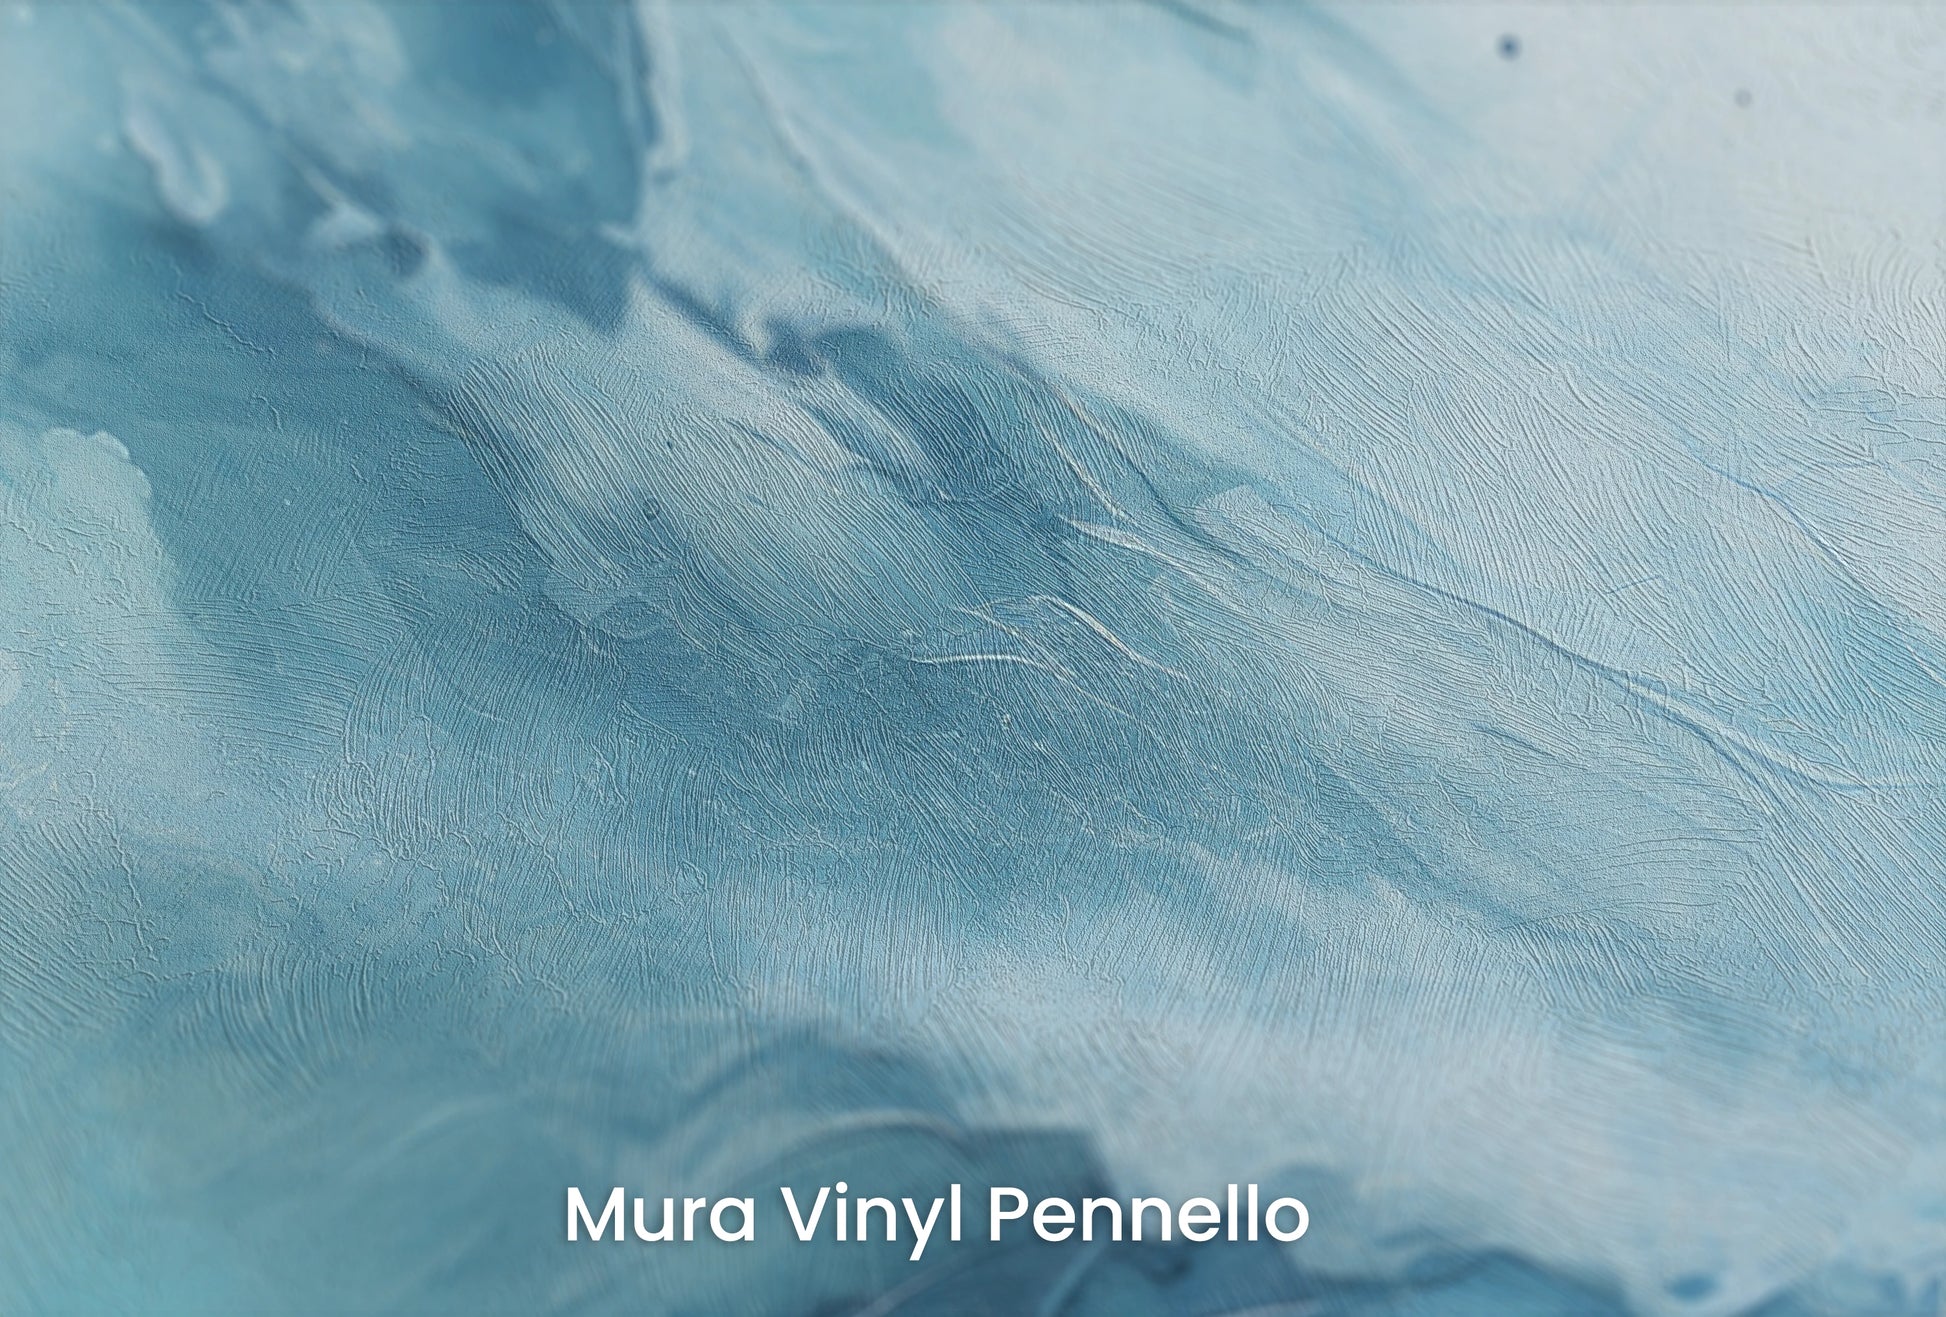 Zbliżenie na artystyczną fototapetę o nazwie Terran Rise na podłożu Mura Vinyl Pennello - faktura pociągnięć pędzla malarskiego.